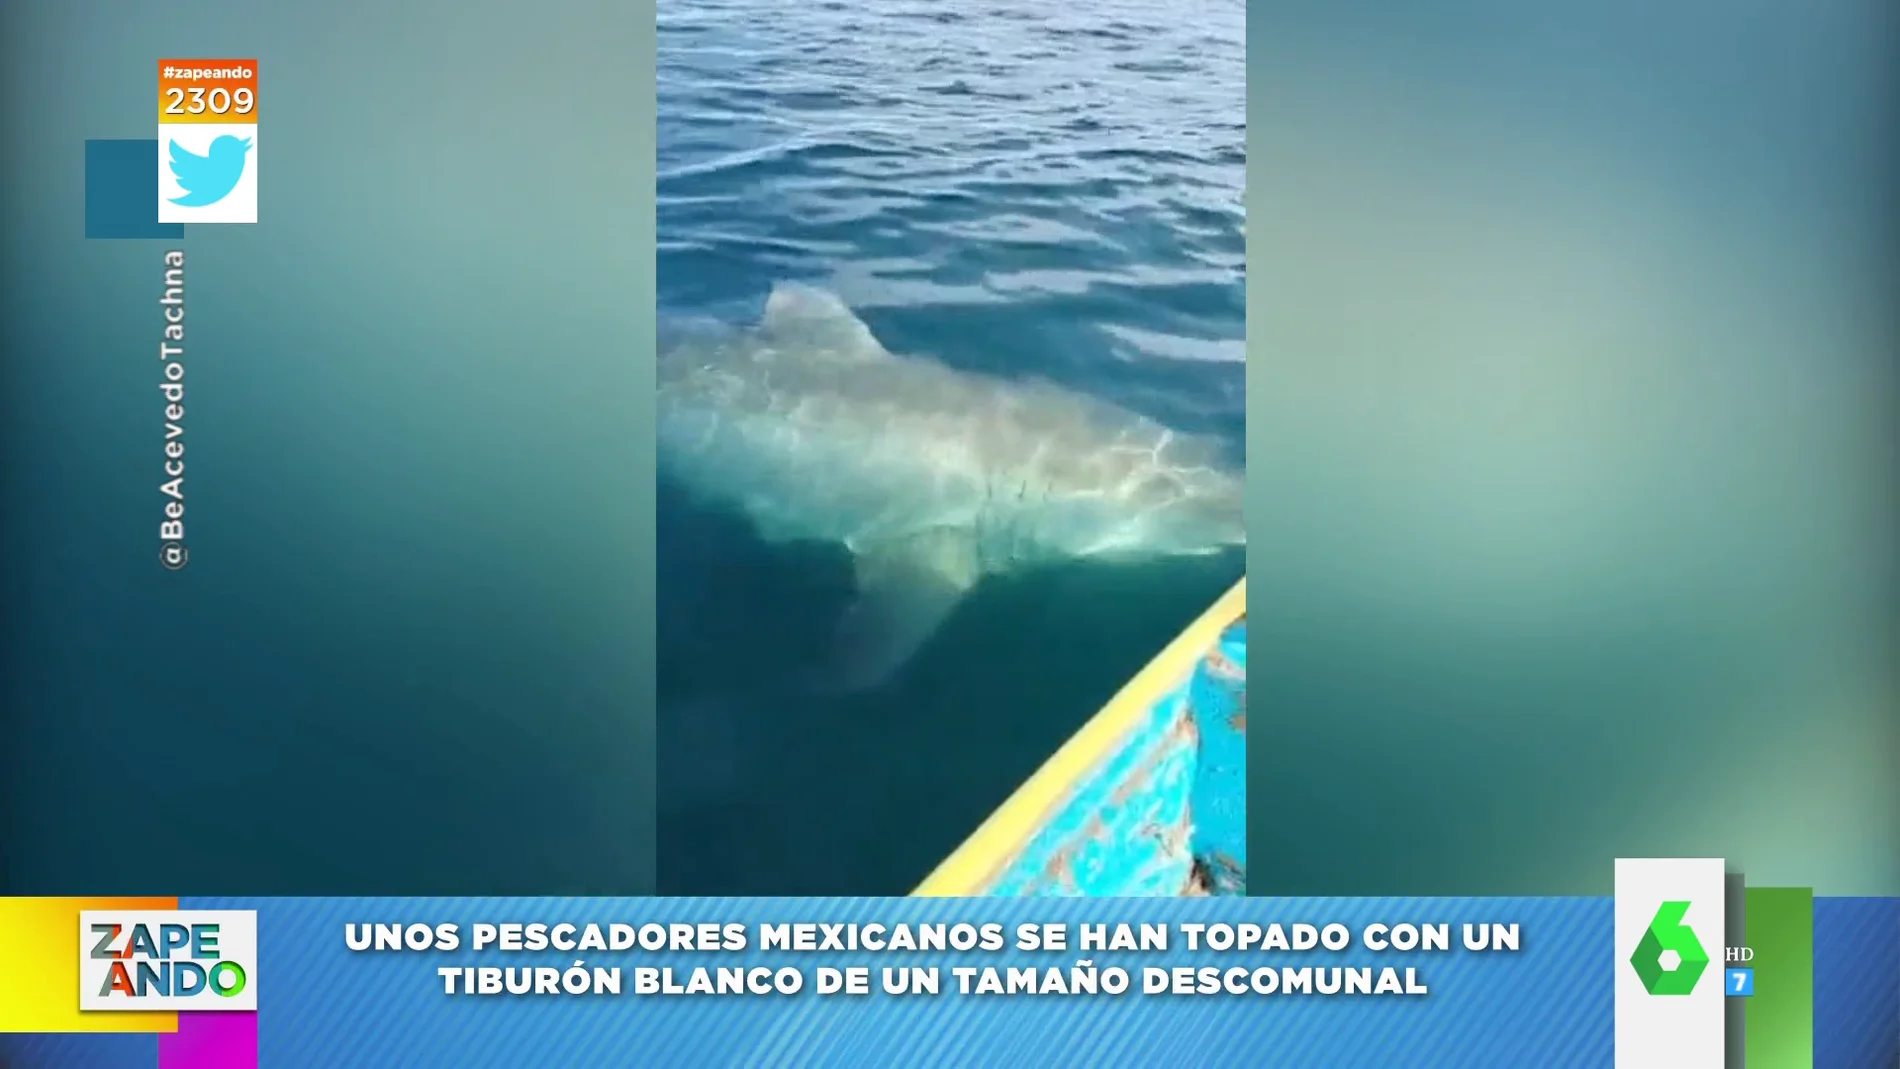 El susto viral de unos pescadores al ver cómo un tiburón de grandes dimensiones pasaba debajo de la barca 